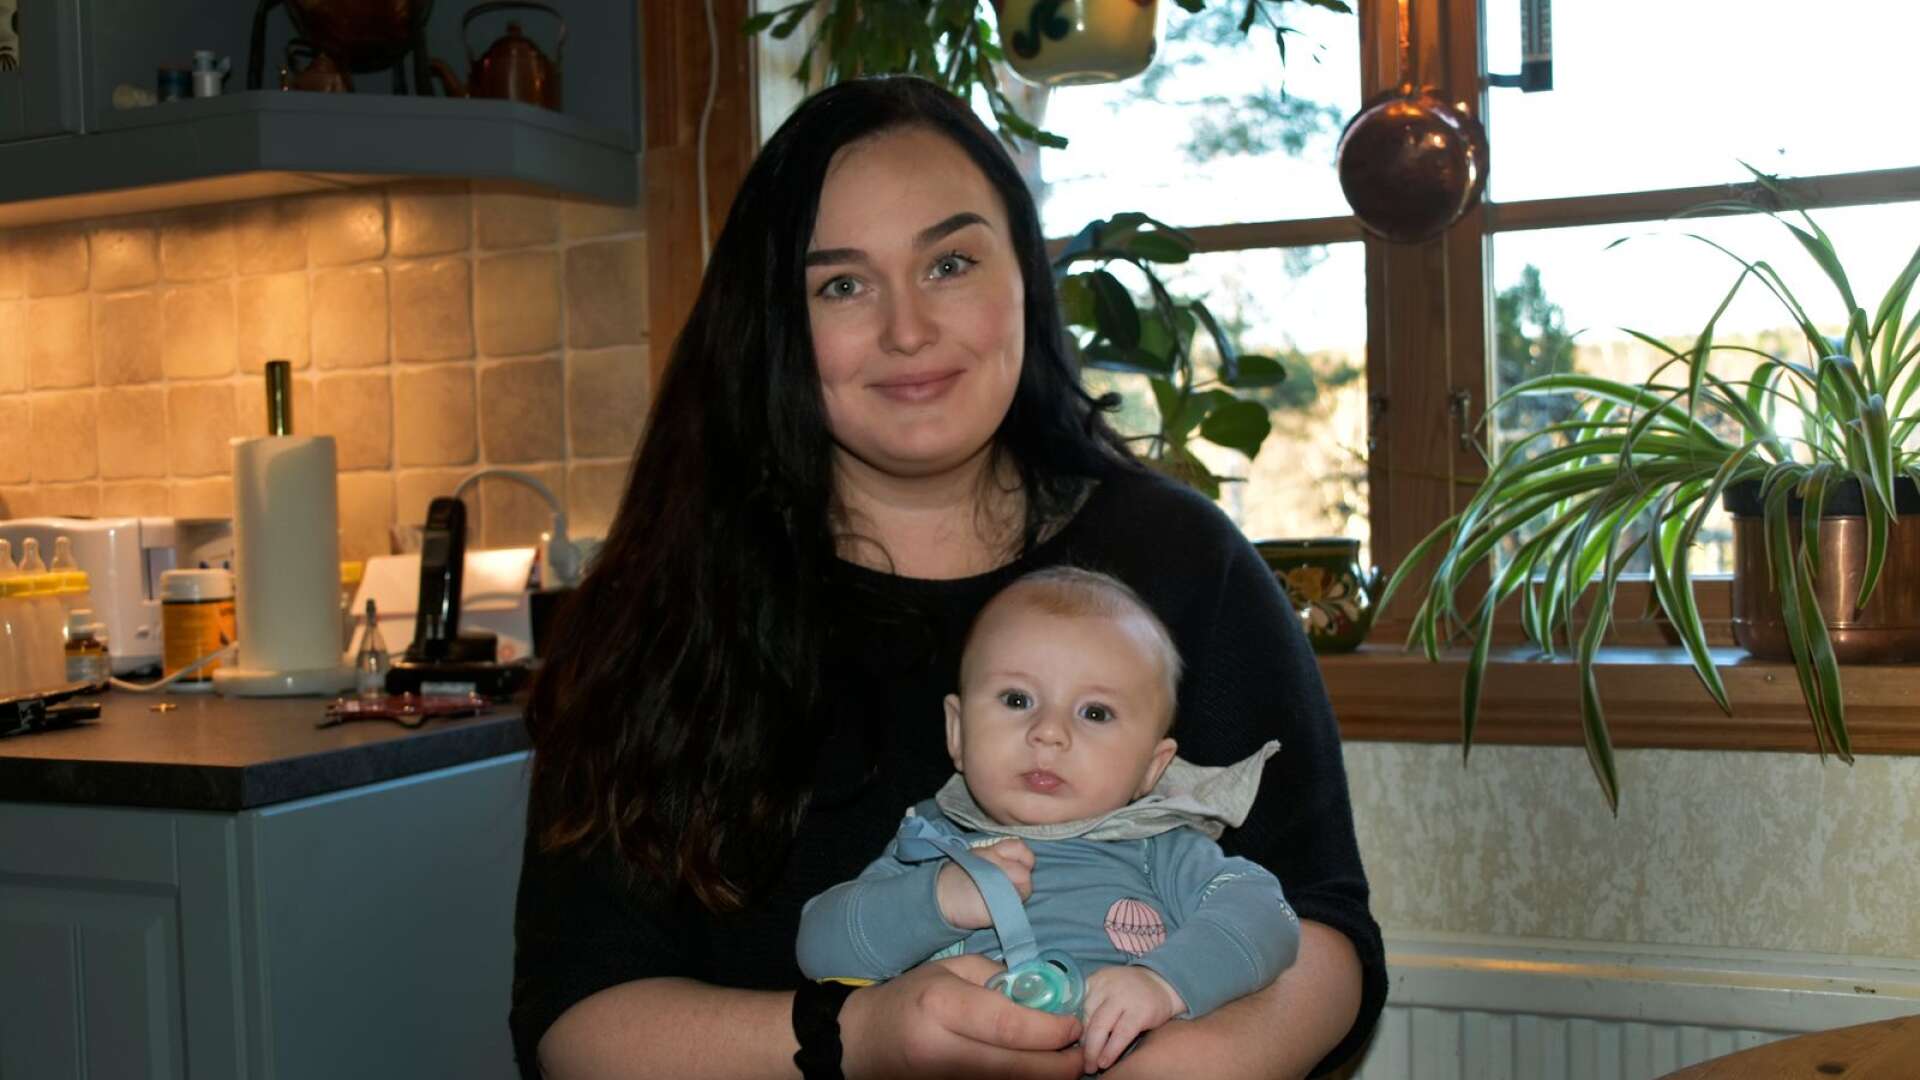 Resan har varit både krokig och mödosam men Mirja Arnesson nådde till sist sitt livs mål: att bli mamma. Att göra det som ensamstående har inte varit lätt, men nu när sonen Elliot är här har det varit värt allt.